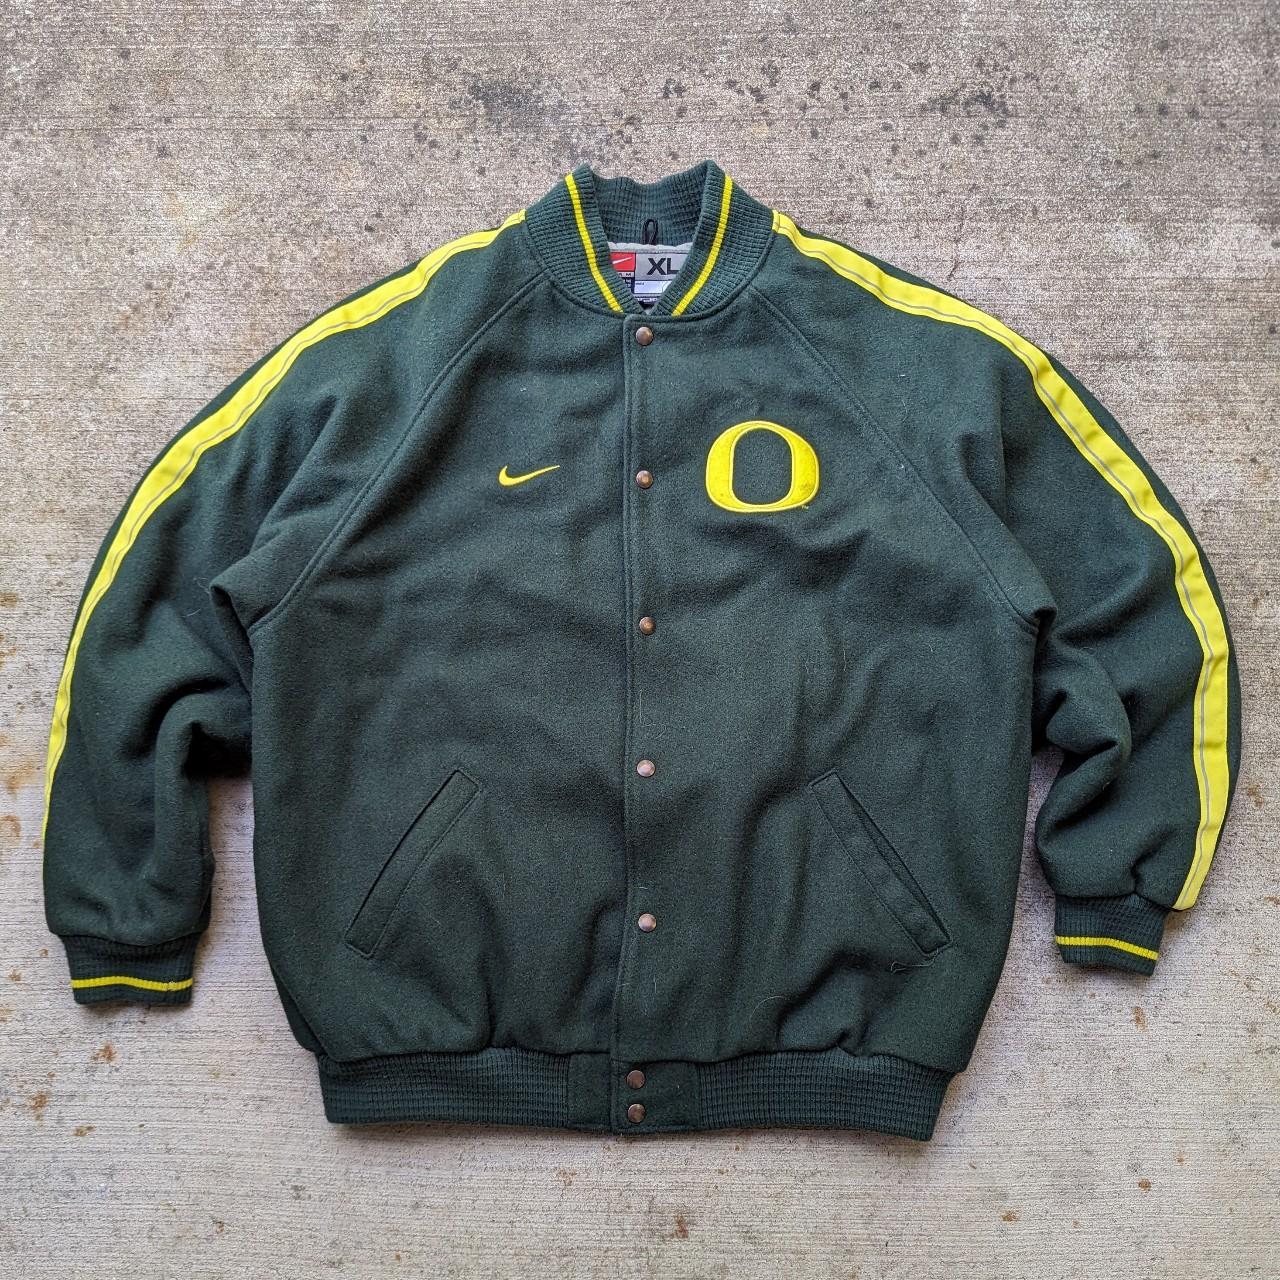 Vintage Nike Team Oregon Ducks Football Jersey - Depop